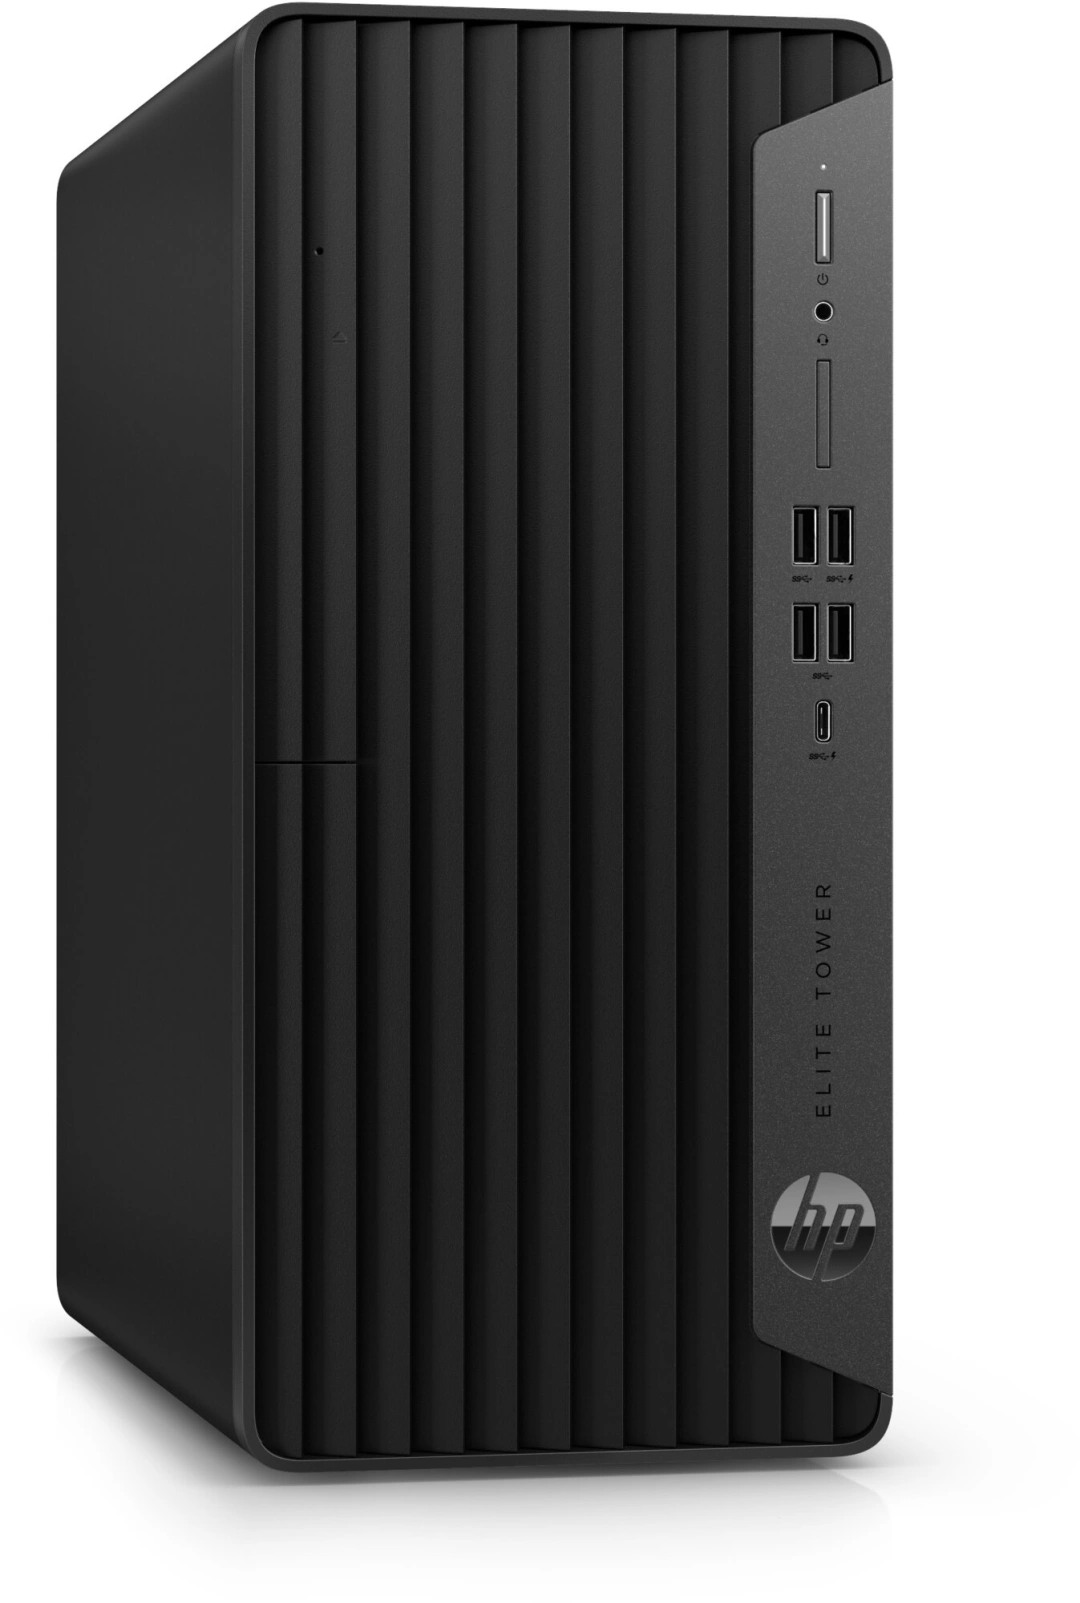 HP Elite Tower 600 G9, black (6U4S9EA)